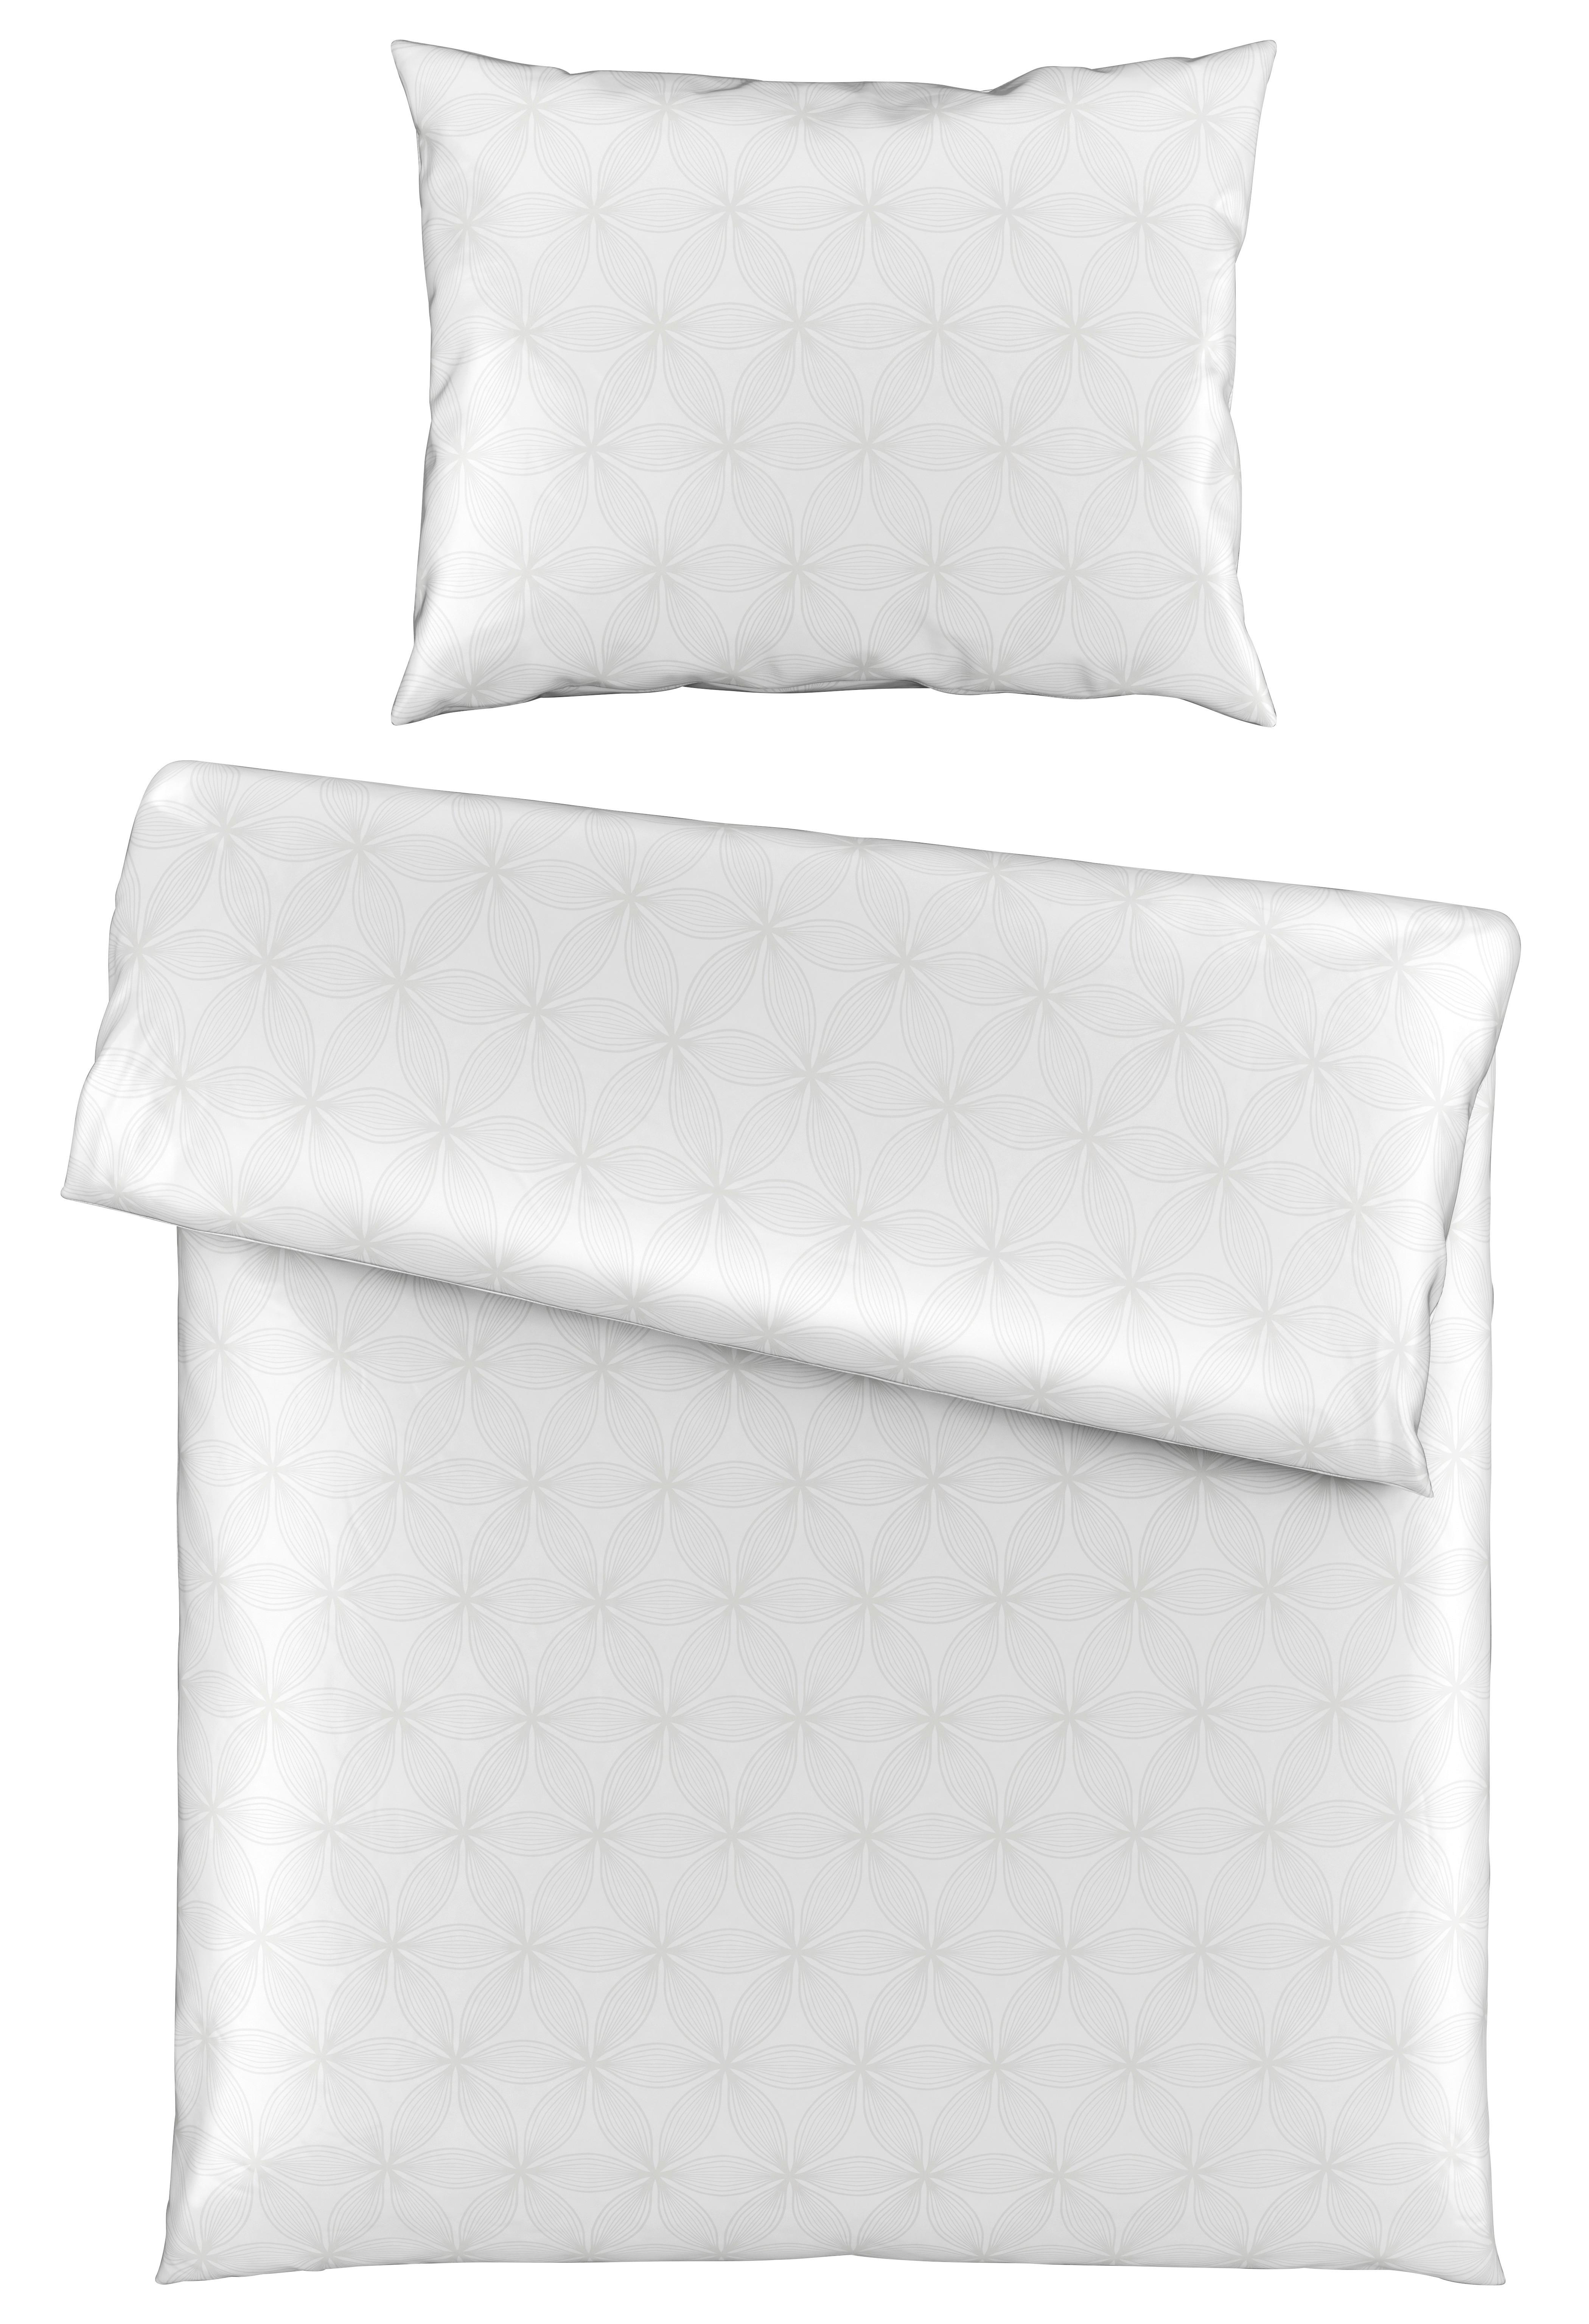 Lenjerie de pat Alex design - alb, Modern, textil (140/200cm) - Premium Living